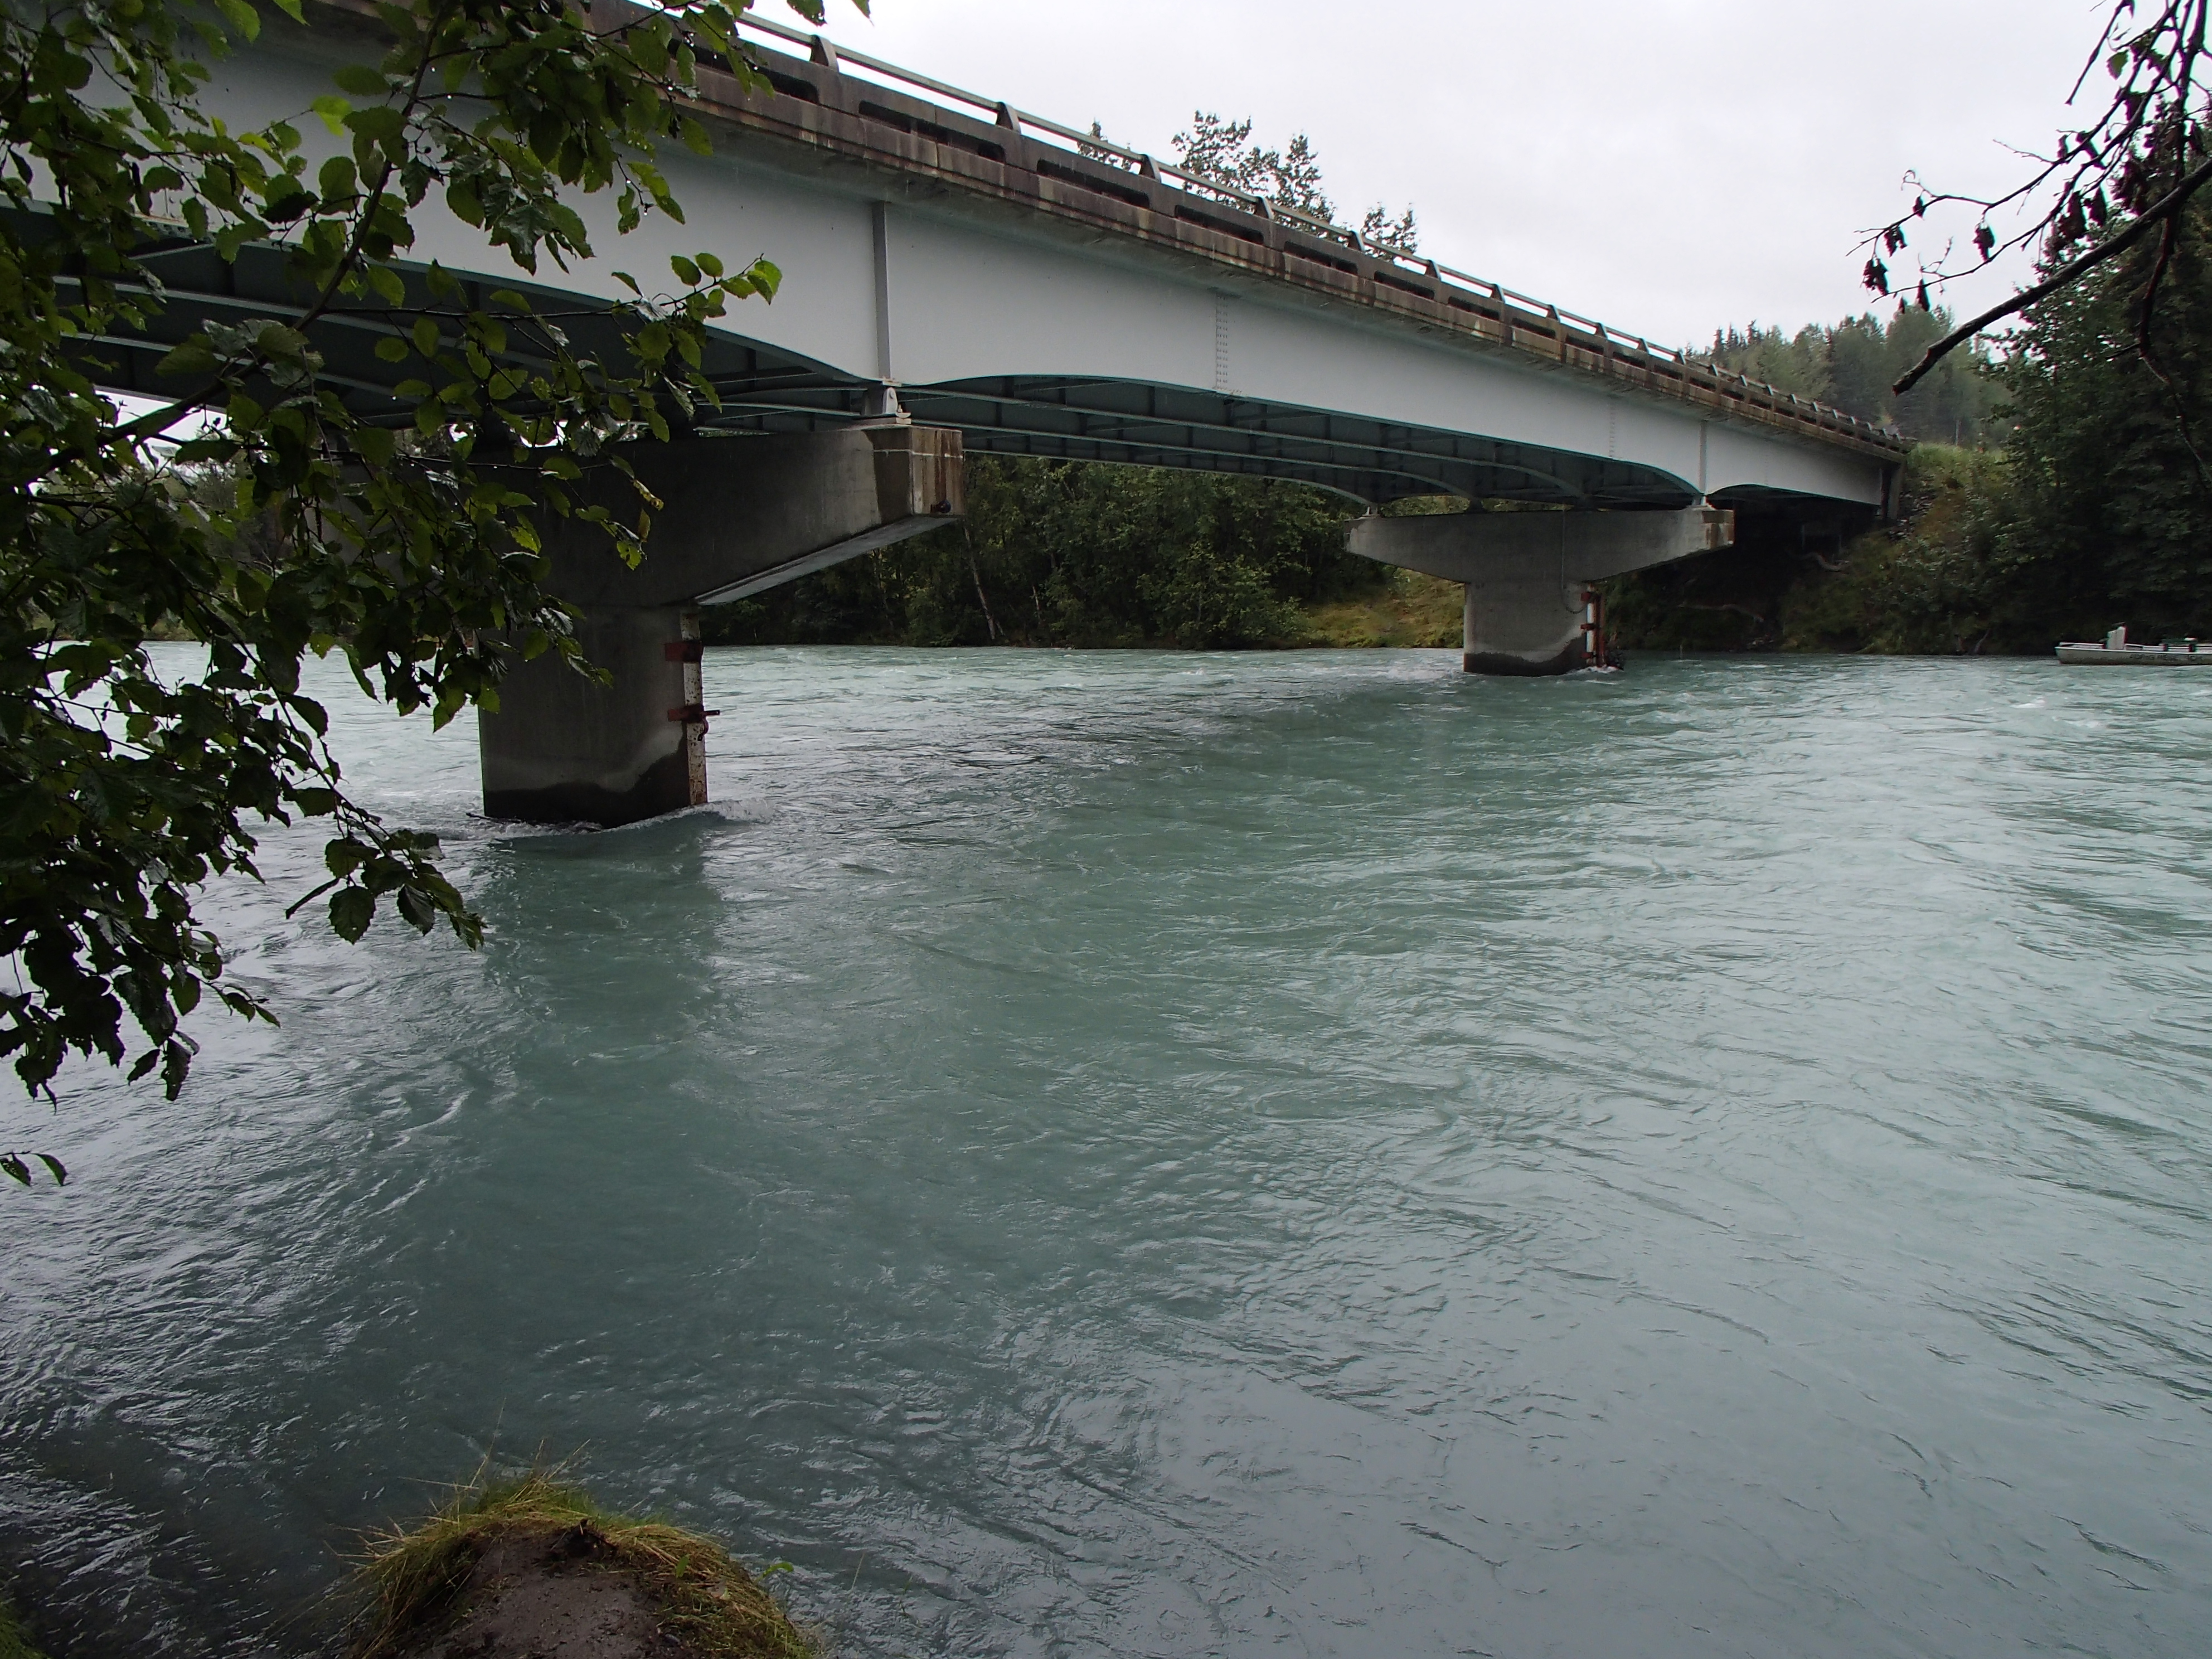 Kasilof River bridge during highwater